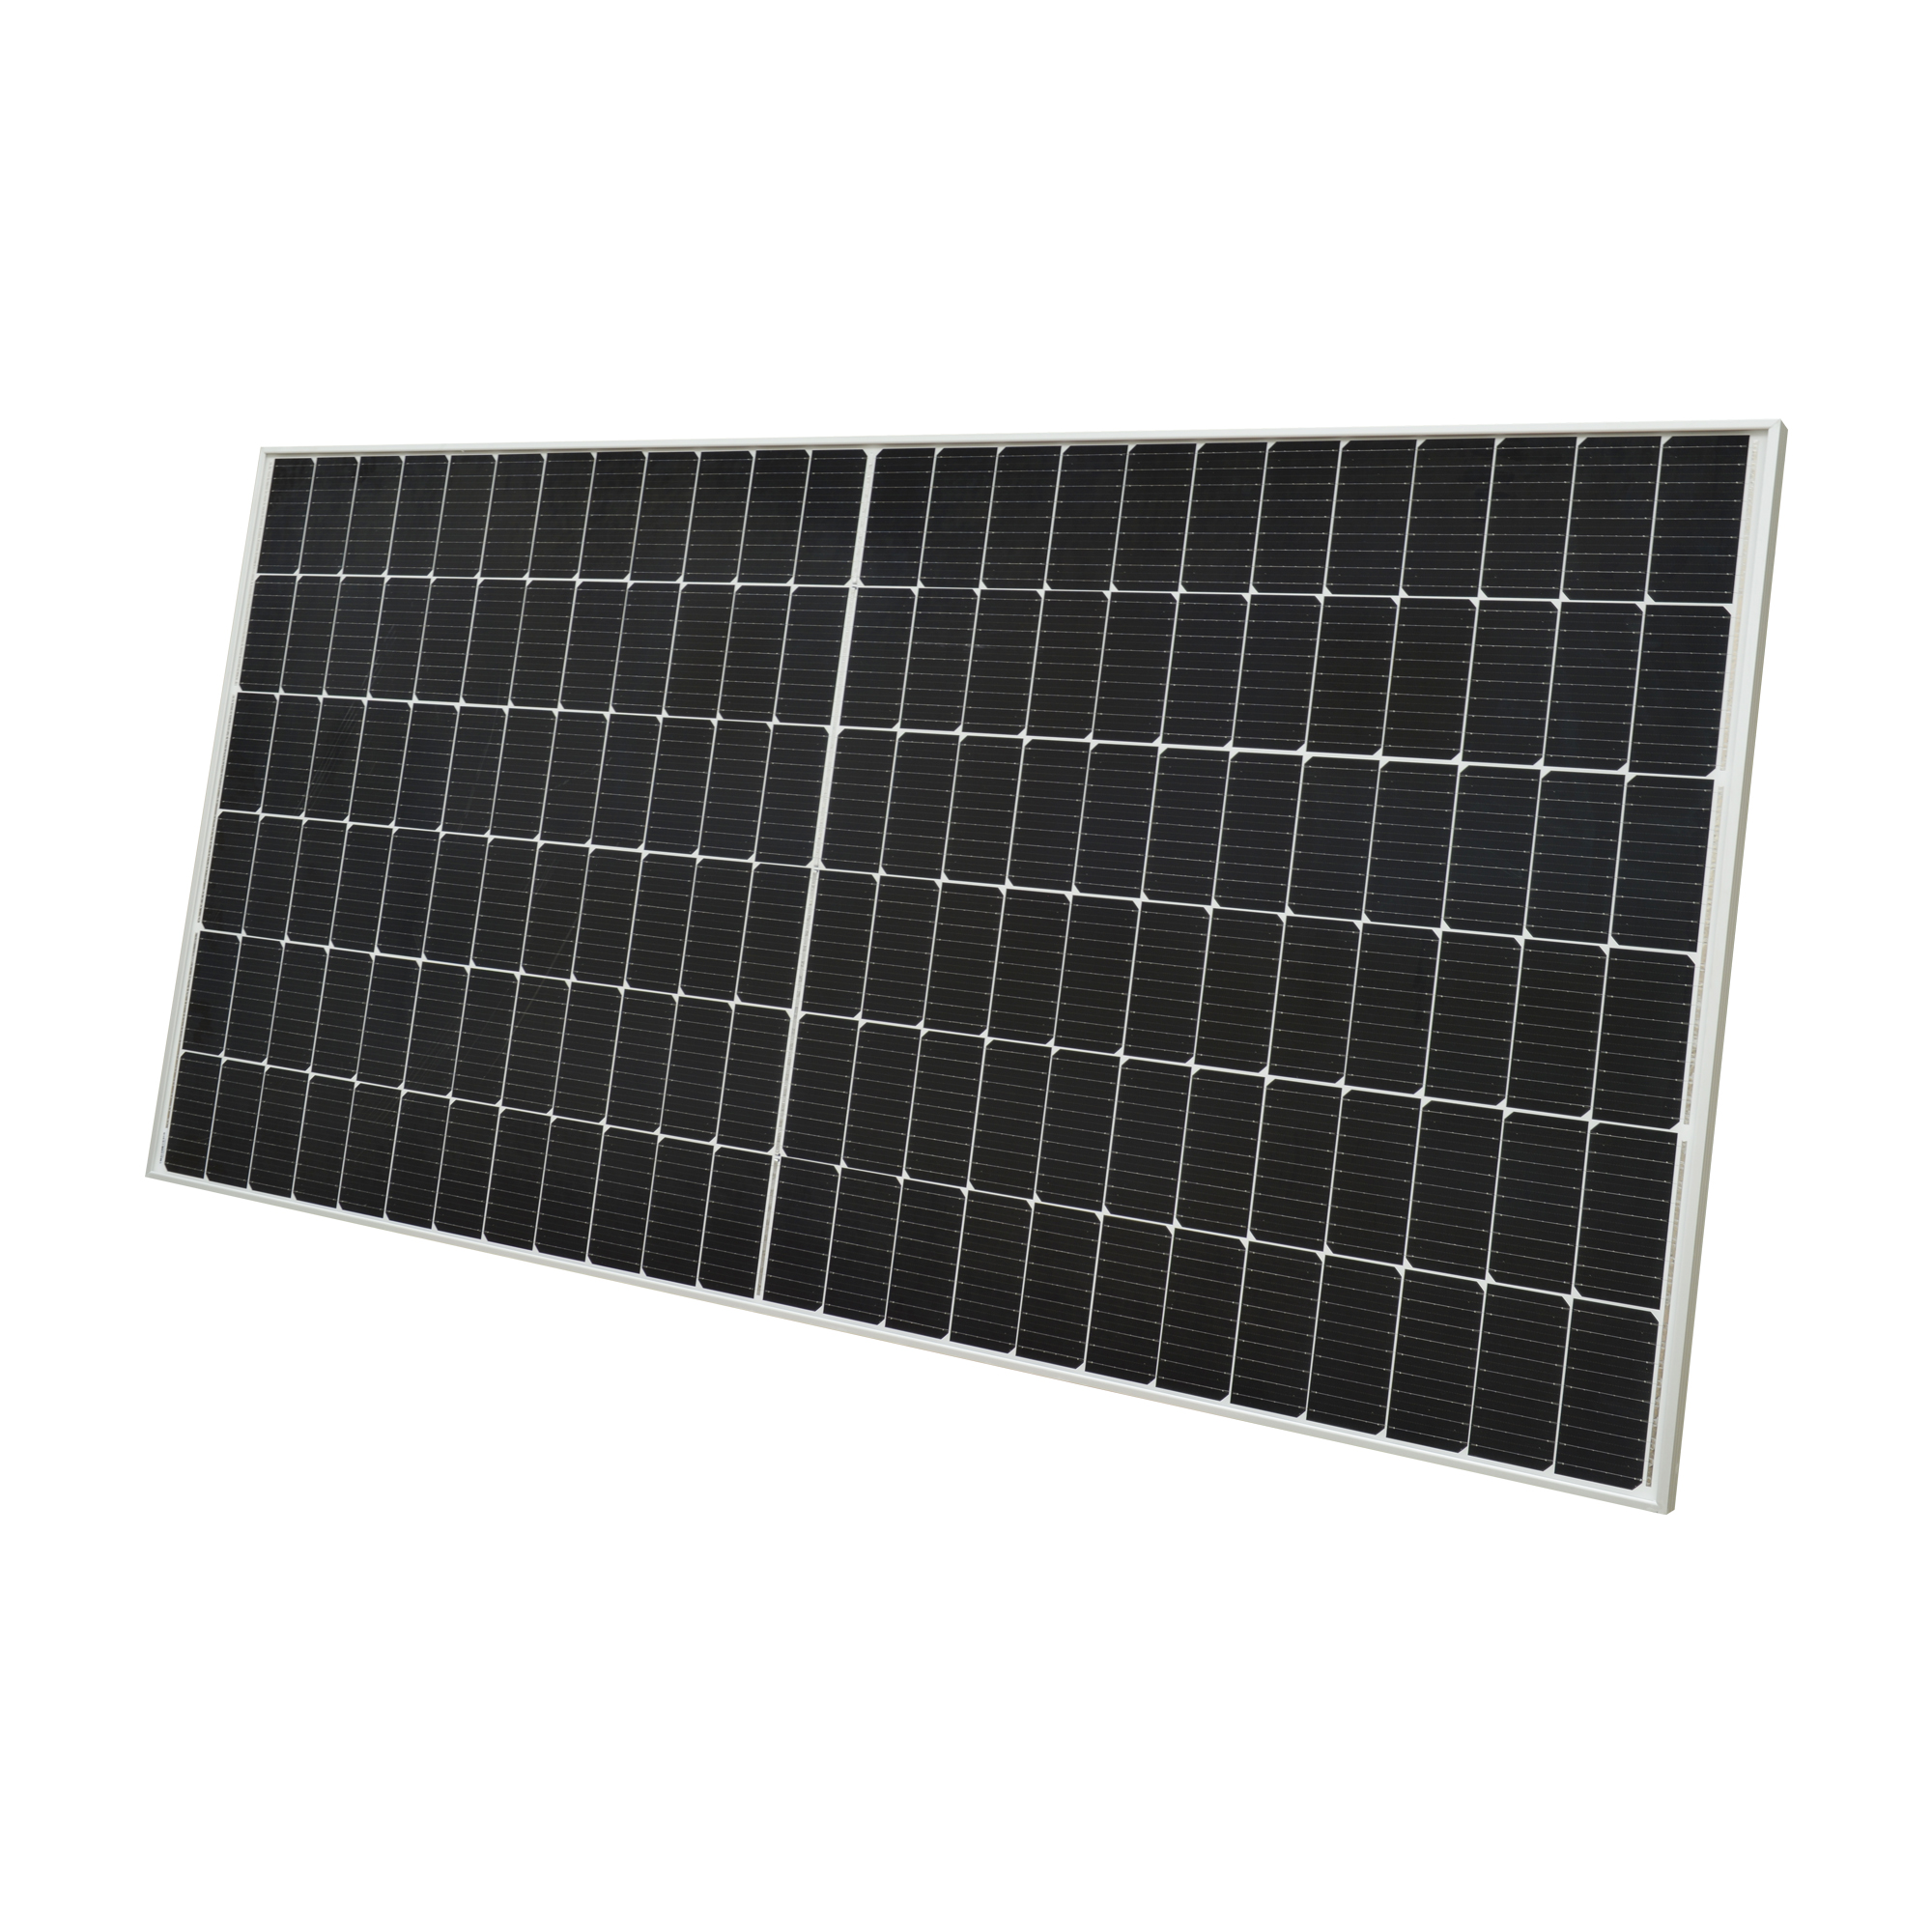 панель солнечной системы 100В Монокристаллическая вне решетки для панели солнечной энергии дома фотоэлектрической